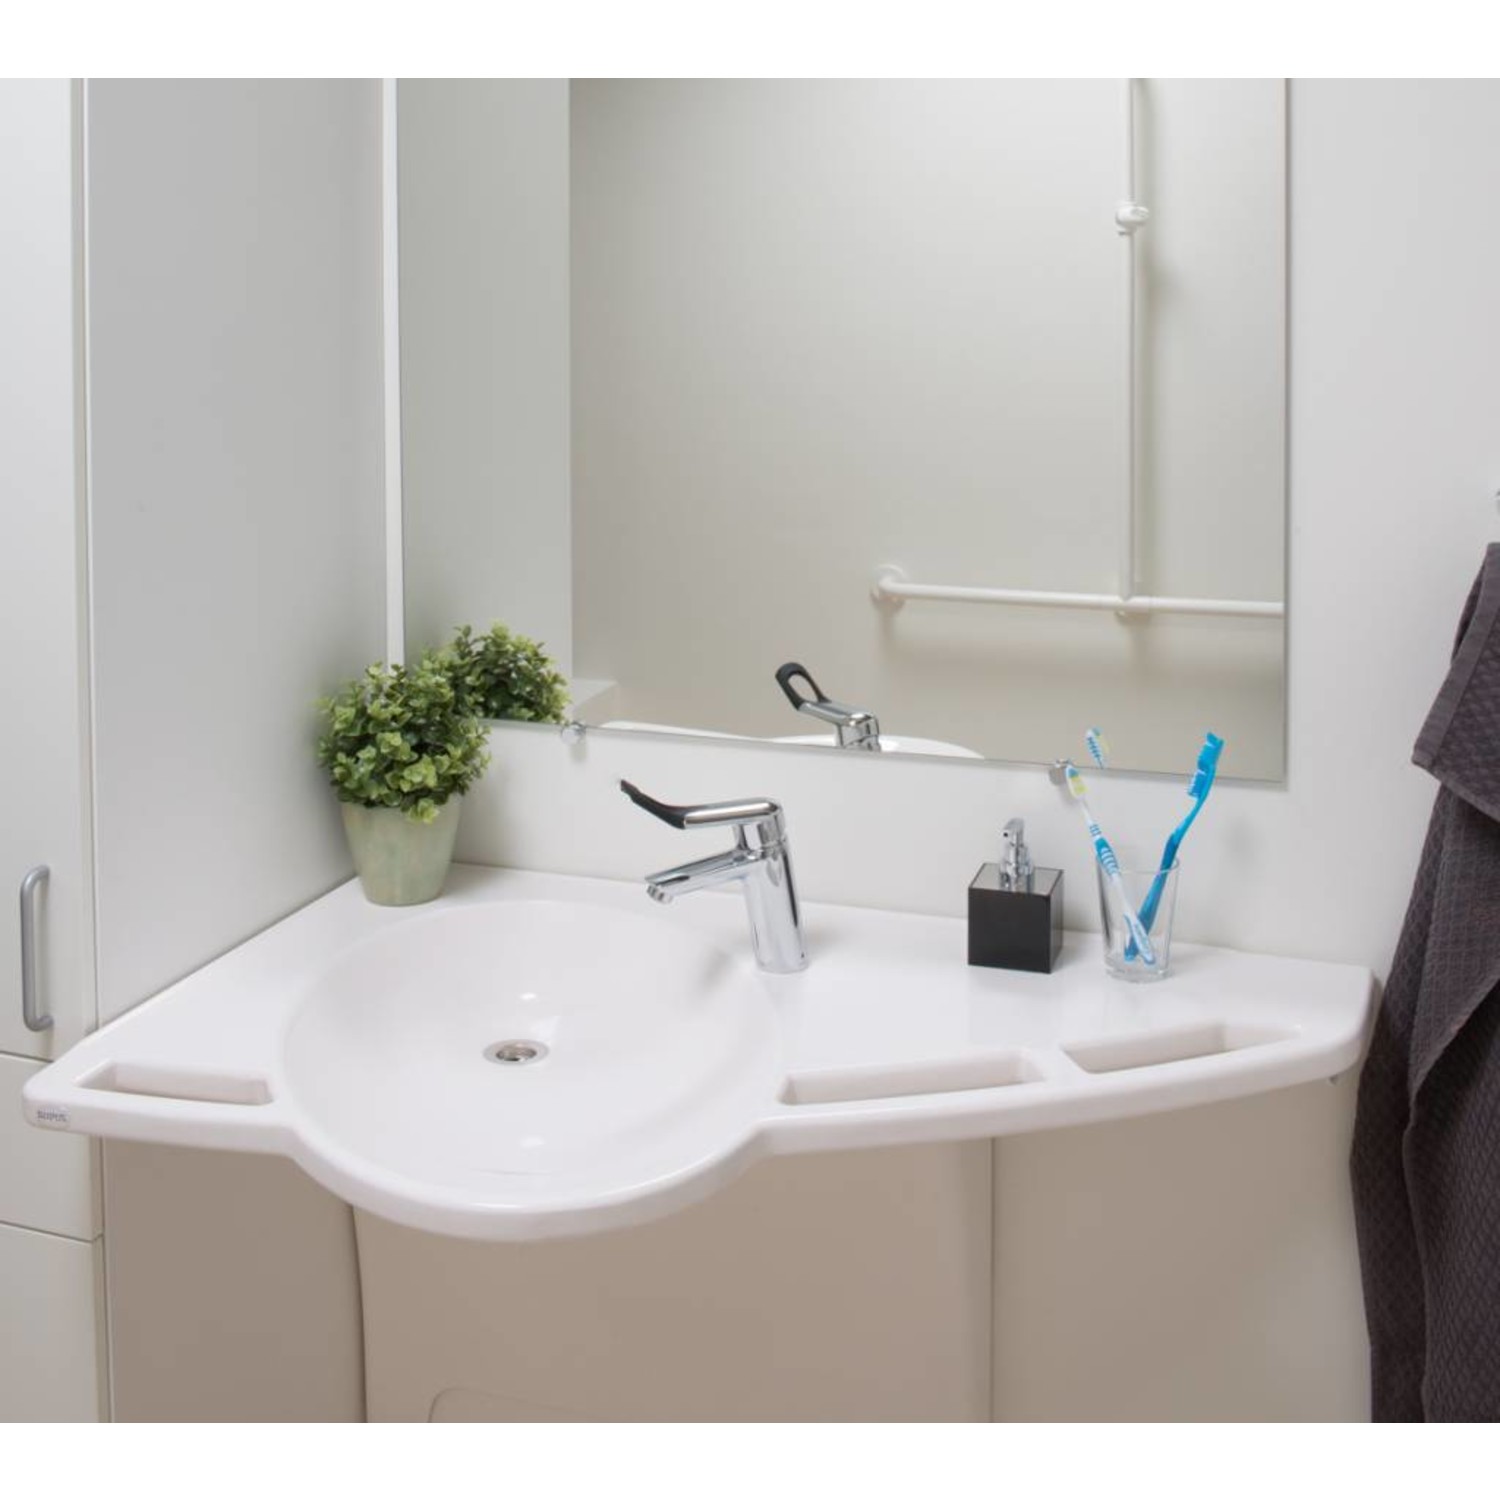 Hoogteverstelbare lavabo met geïntegreerde handvatten Ropox Support kopen - Gratis - ThuiszorgWebshop.be